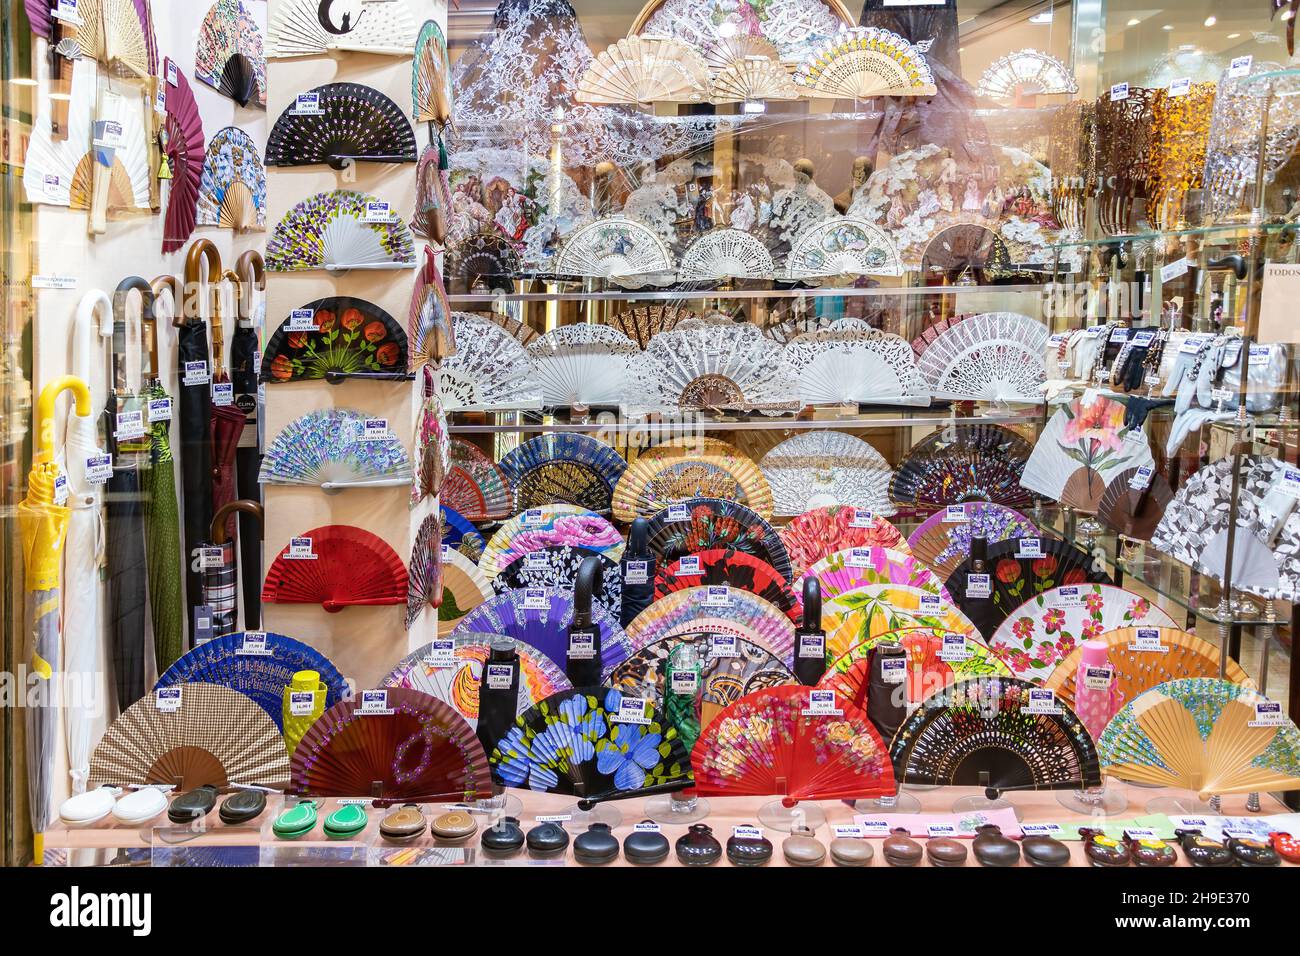 Séville, Espagne - décembre 03,2021 : vitrine d'un magasin de souvenirs espagnols typiques de Séville, de ventilateurs peints à la main et de castanets Banque D'Images